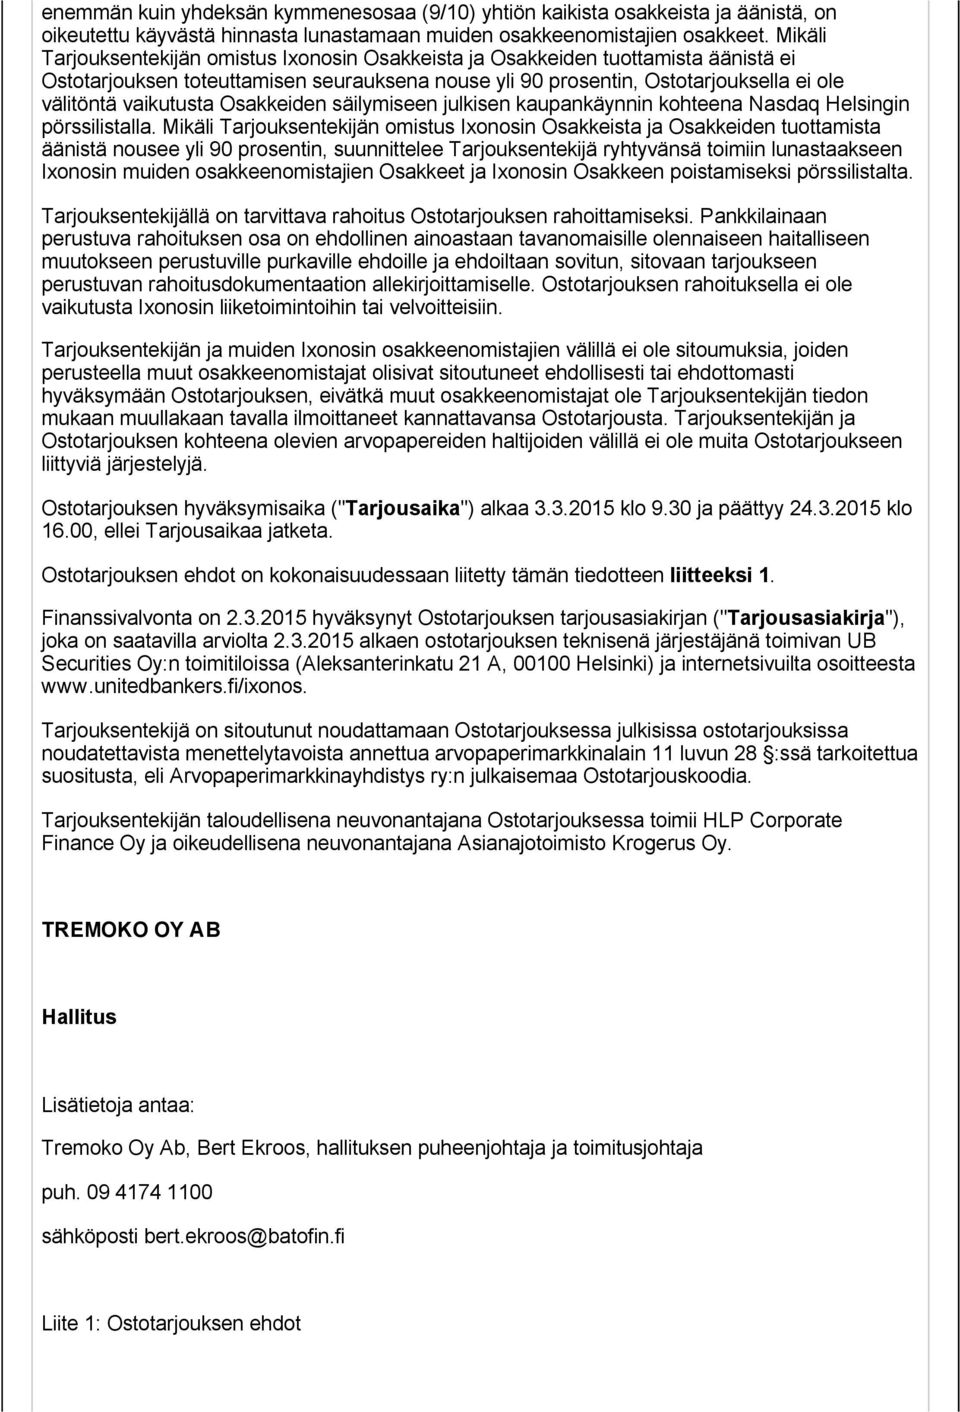 Osakkeiden säilymiseen julkisen kaupankäynnin kohteena Nasdaq Helsingin pörssilistalla.